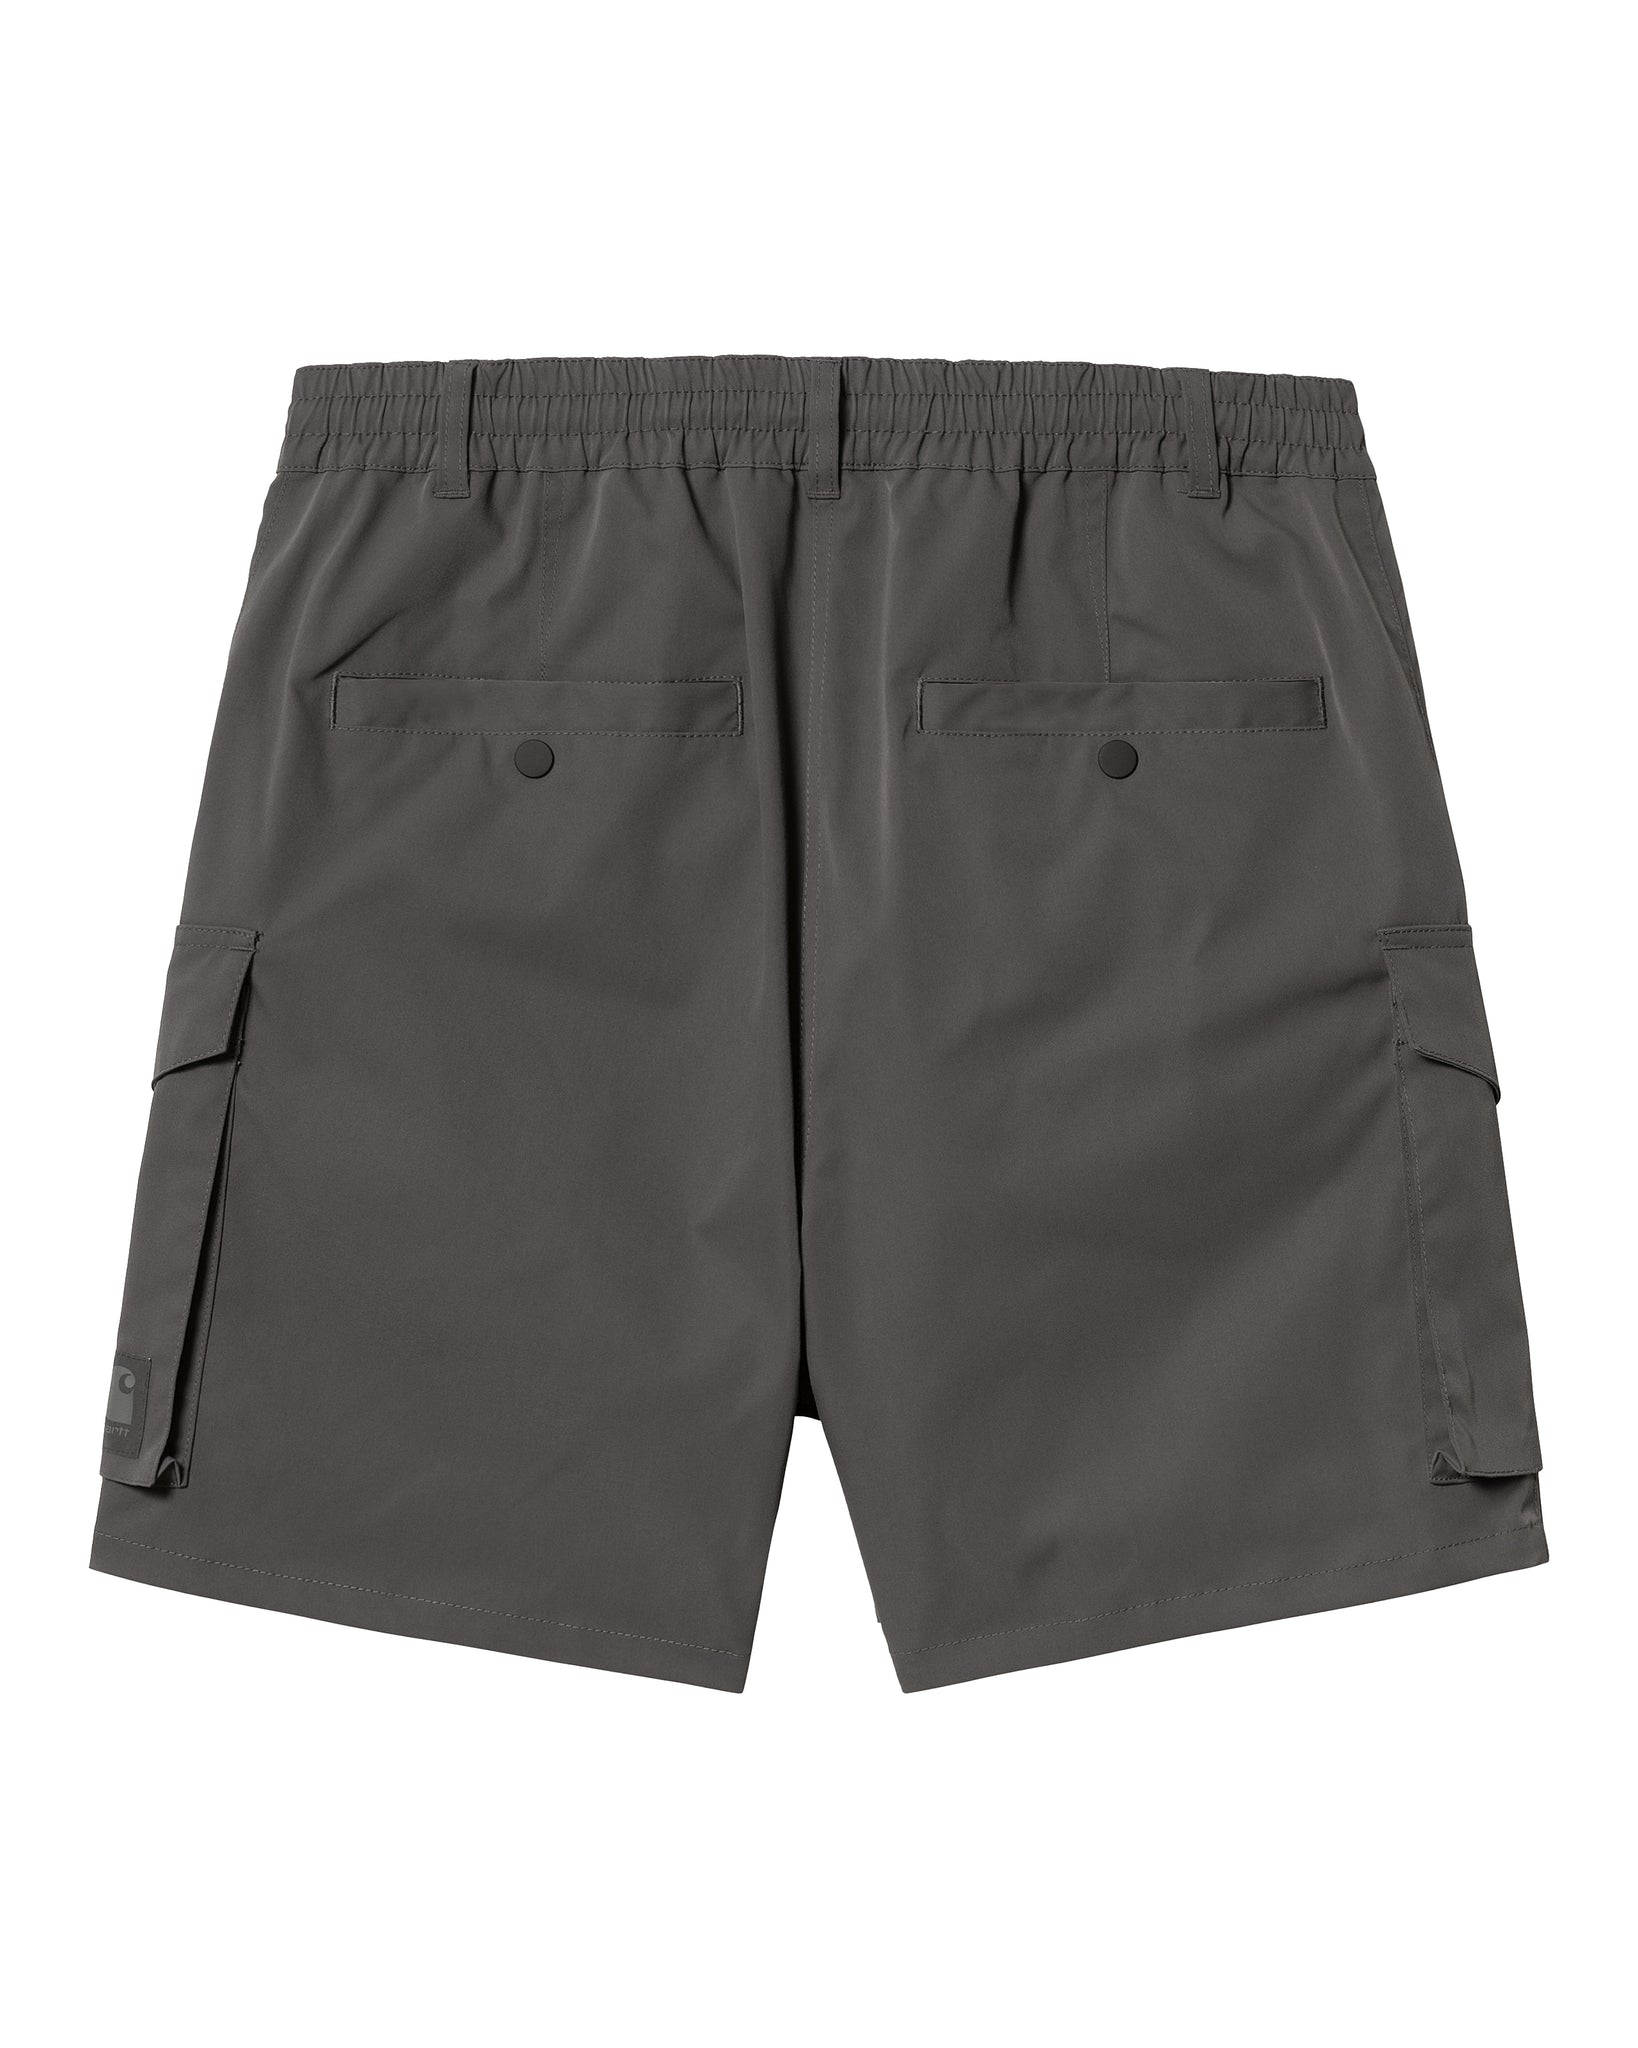 Pantalón Short Balto - Graphite